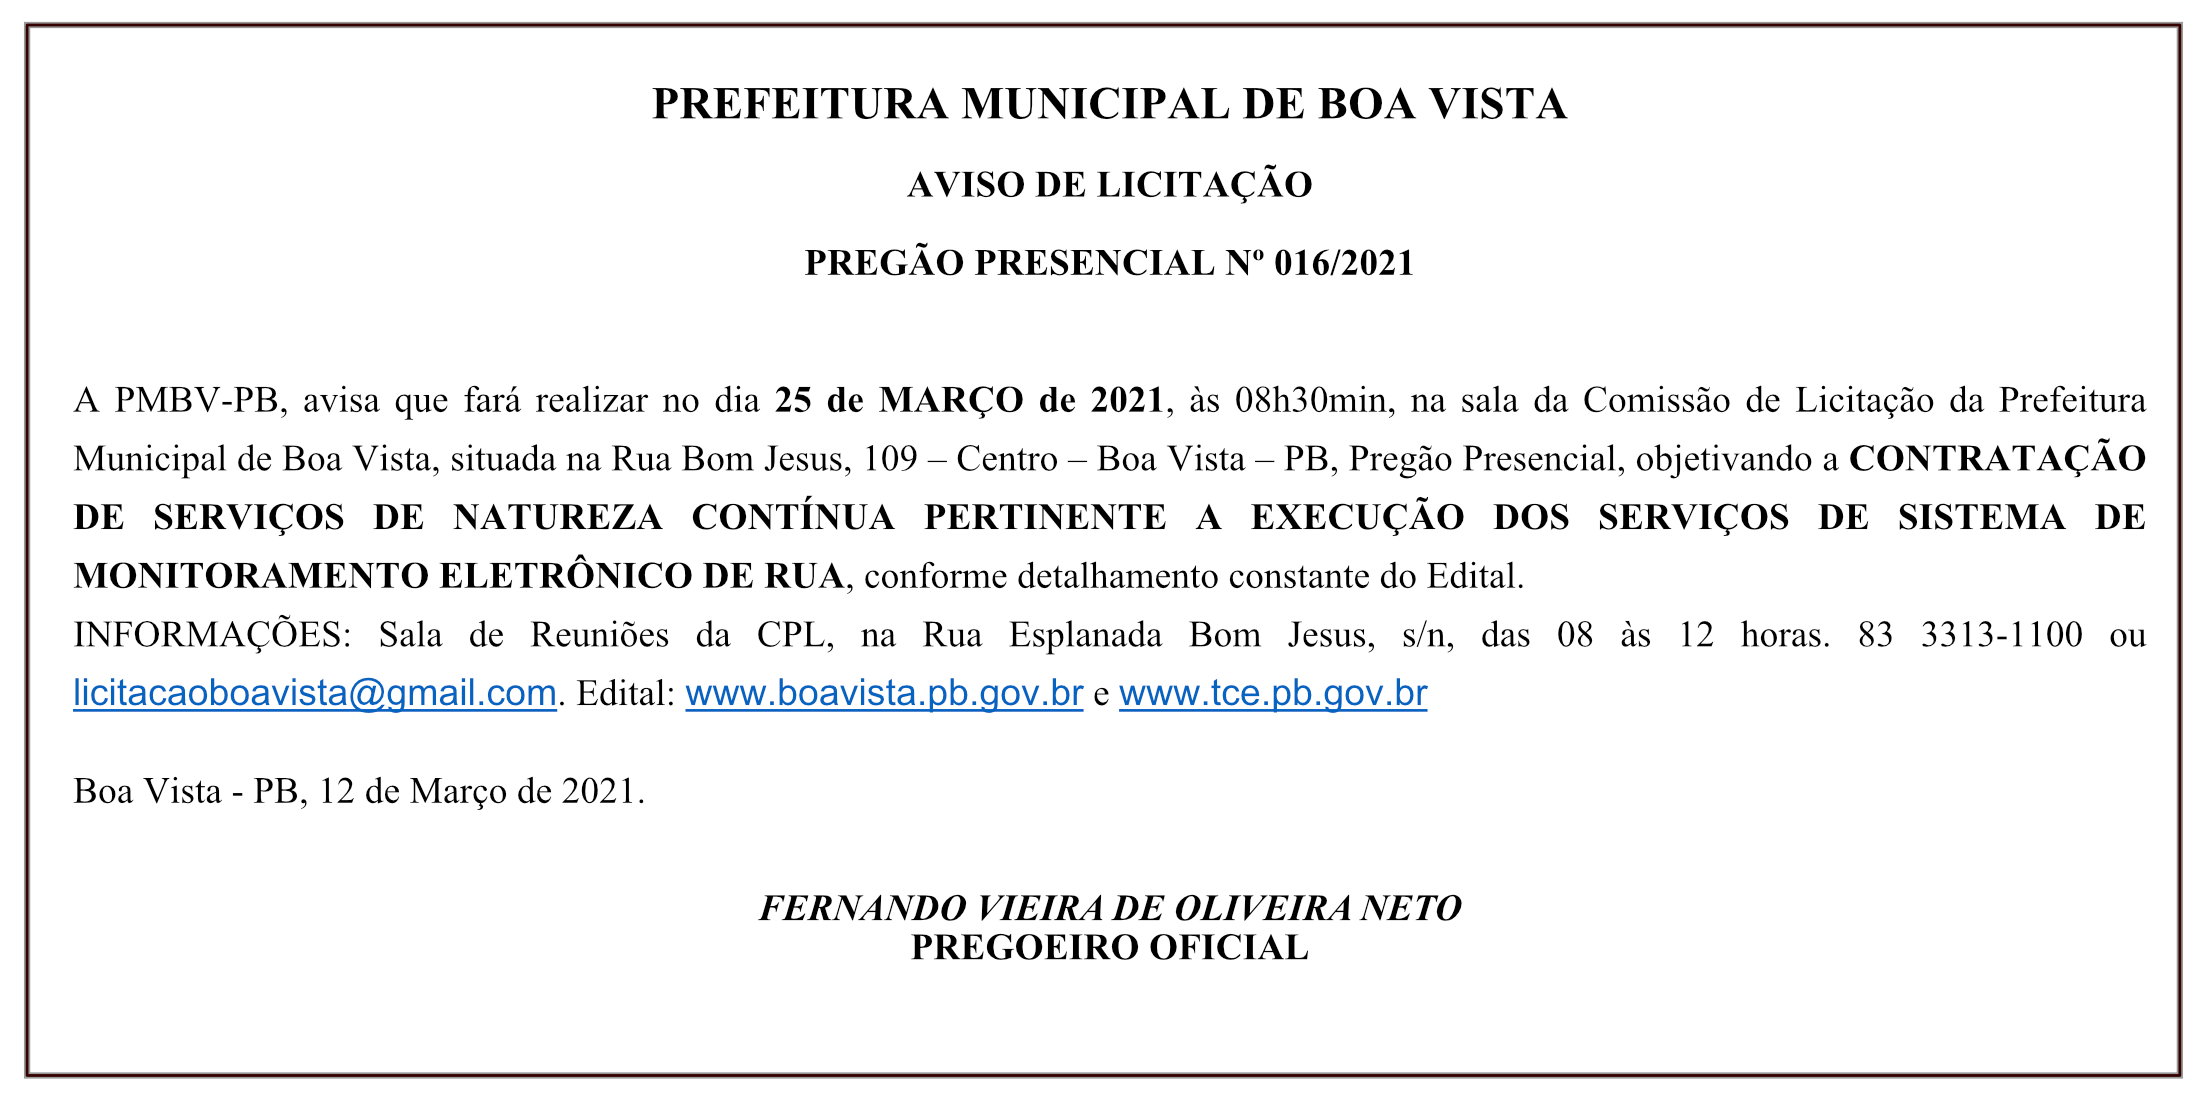 PREFEITURA MUNICIPAL DE BOA VISTA – AVISO DE LICITAÇÃO – PREGÃO PRESENCIAL Nº 016/2021